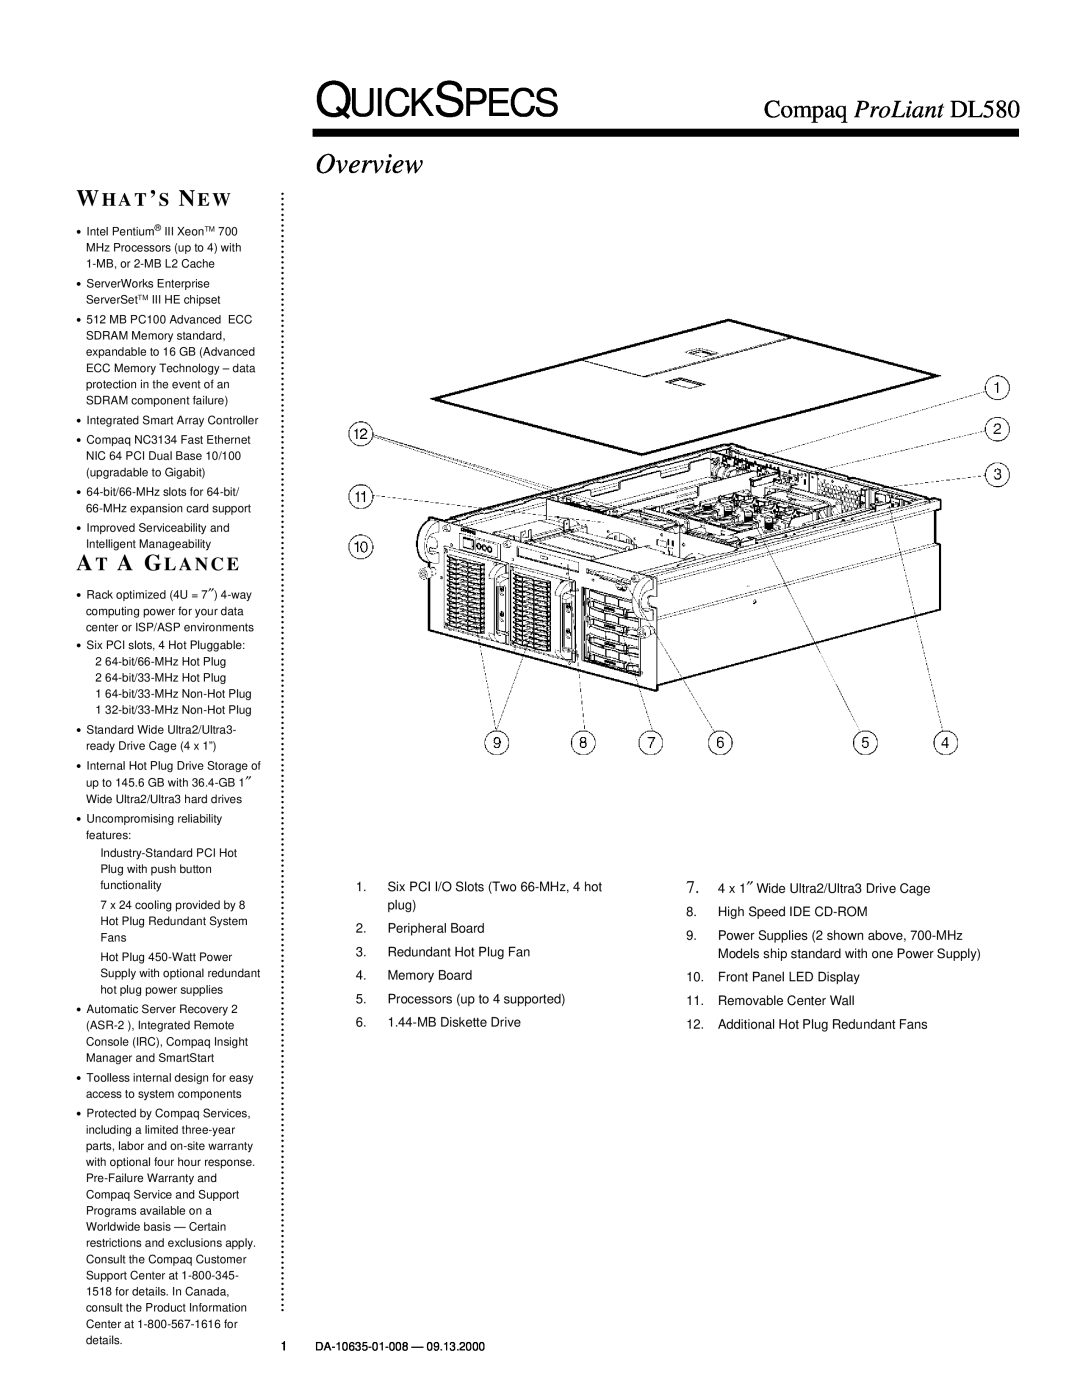 Compaq warranty QuickSpecs, Overview, Compaq ProLiant DL580, Whats New, At A Glance 